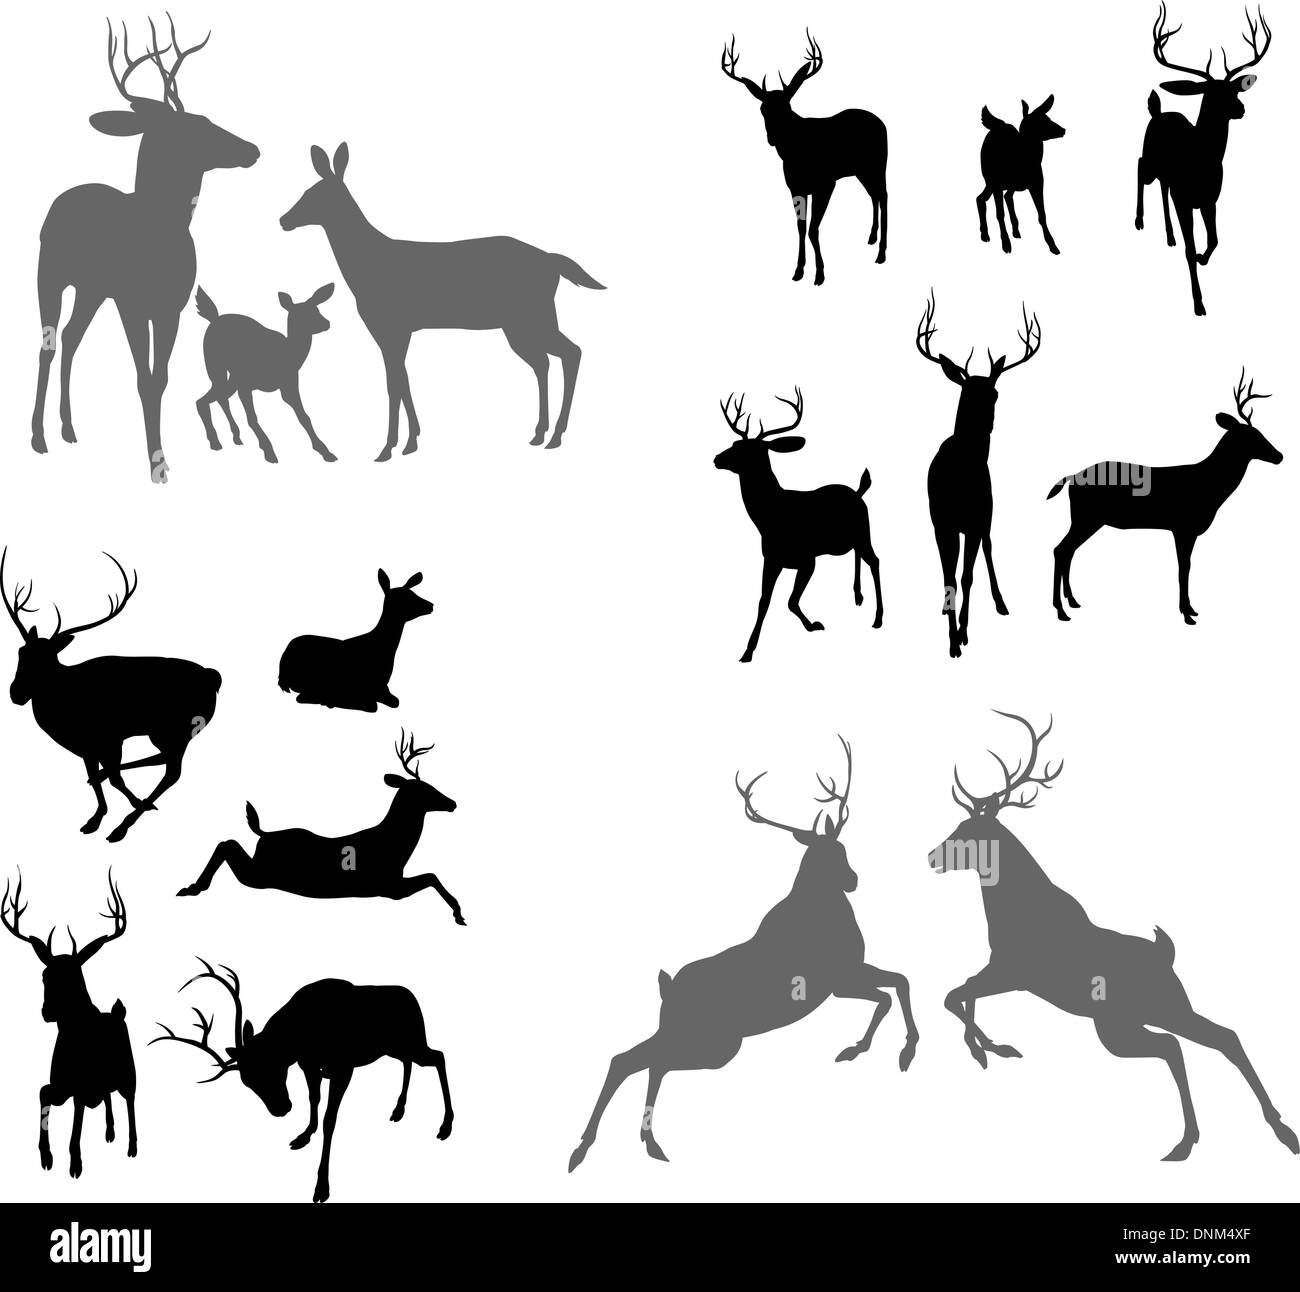 Un set di deer silhouettes compresi fulvo, doe daini e cervi in pose diverse. Anche un gruppo di famiglia pongono e due cervi combattimenti Illustrazione Vettoriale